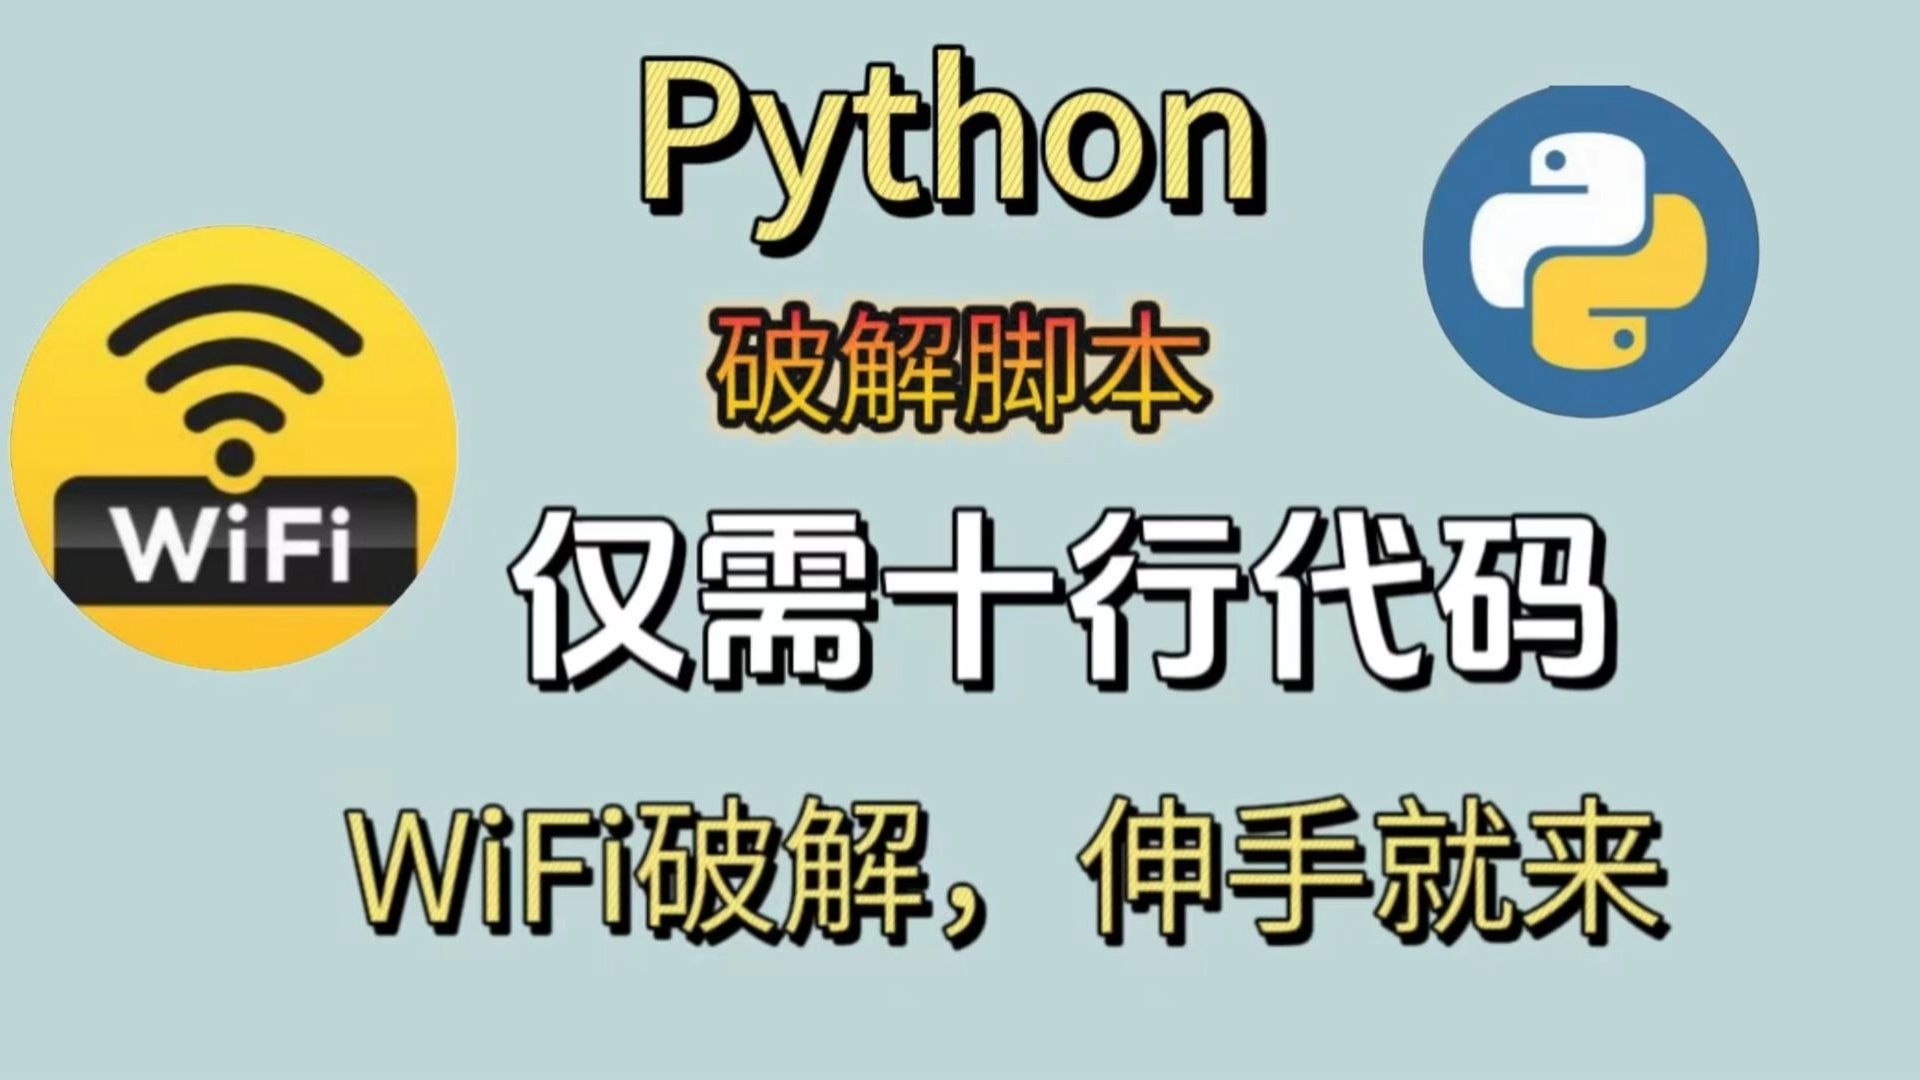 Python两行代码强行破解，WiFi密码我伸手就来，十秒一键畅连，堪比Wifi万能钥匙，值得收藏！